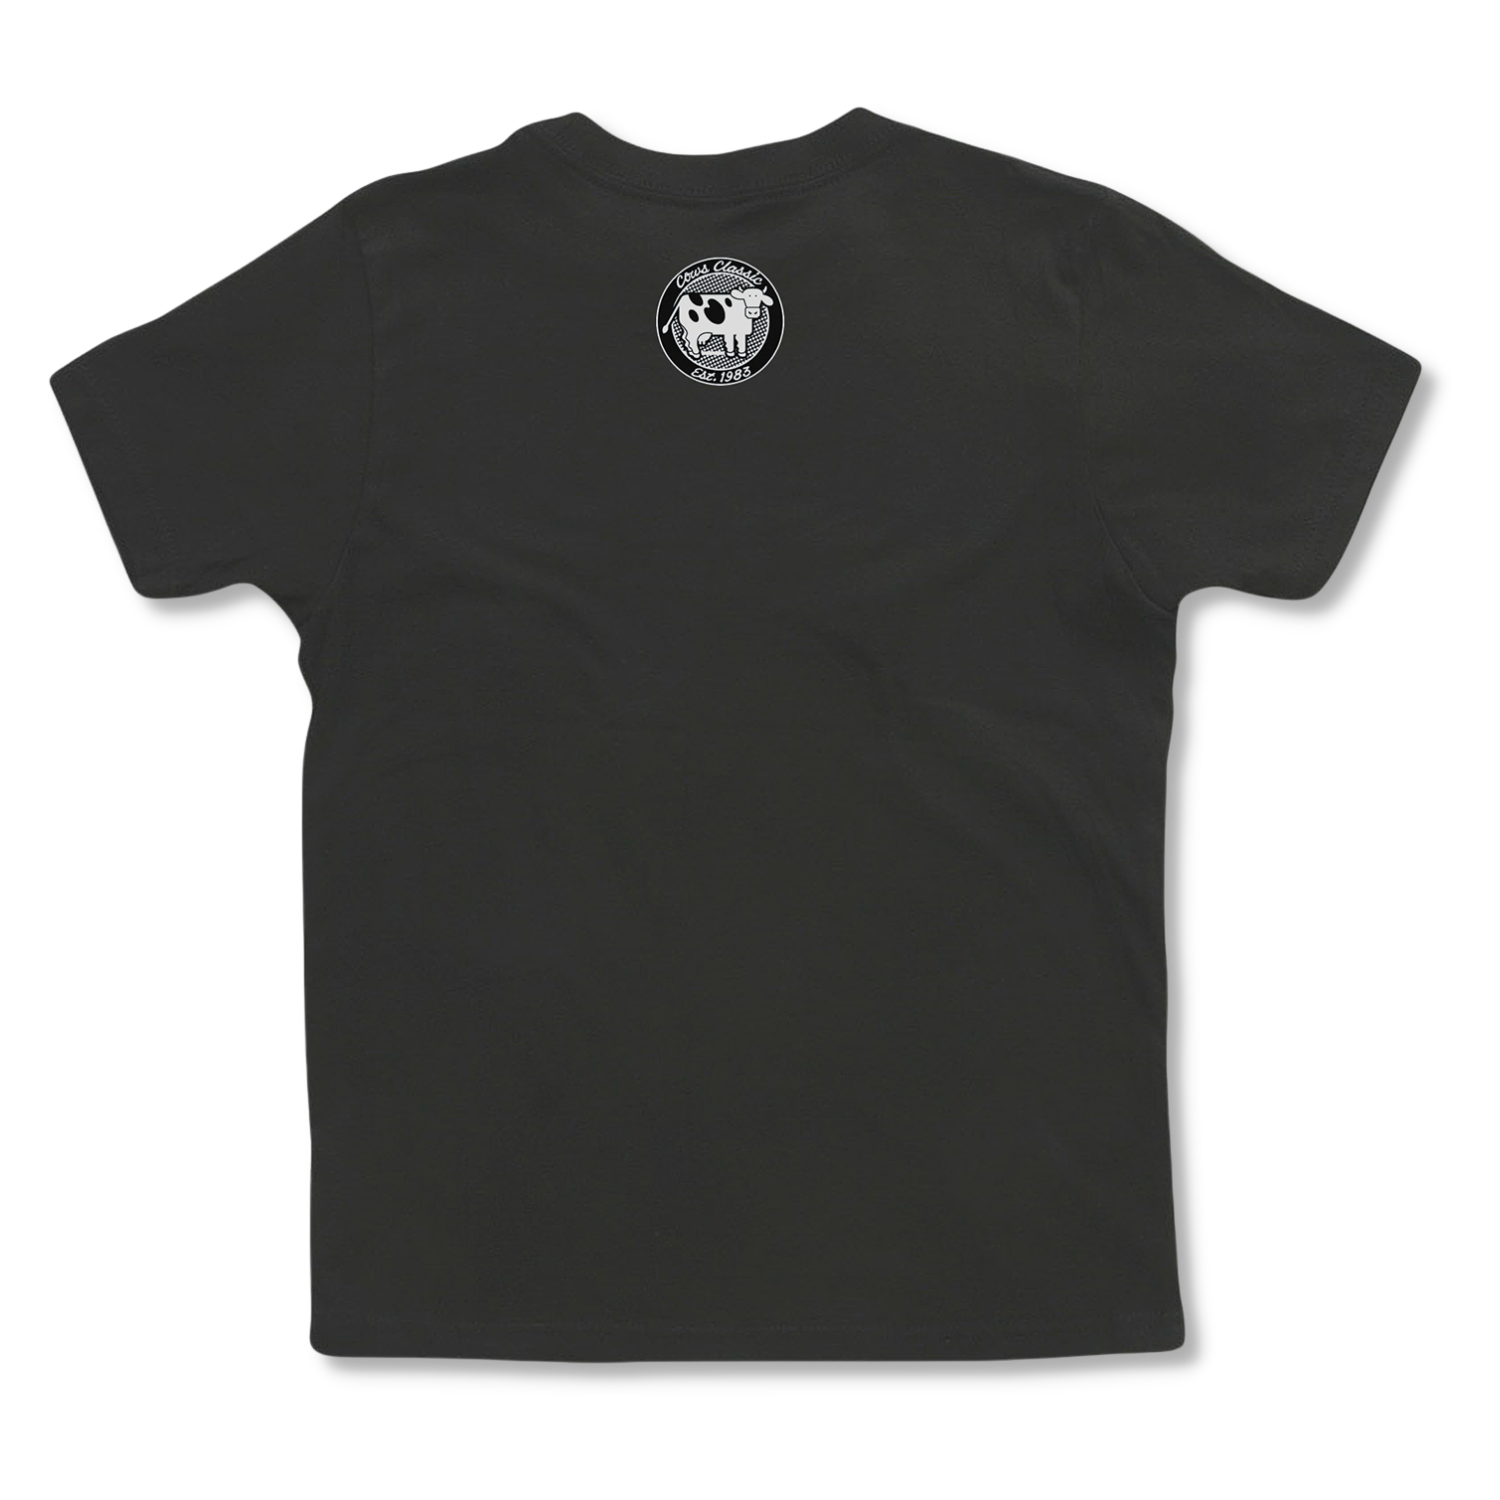 Hayfire Club COWS T-shirt classique